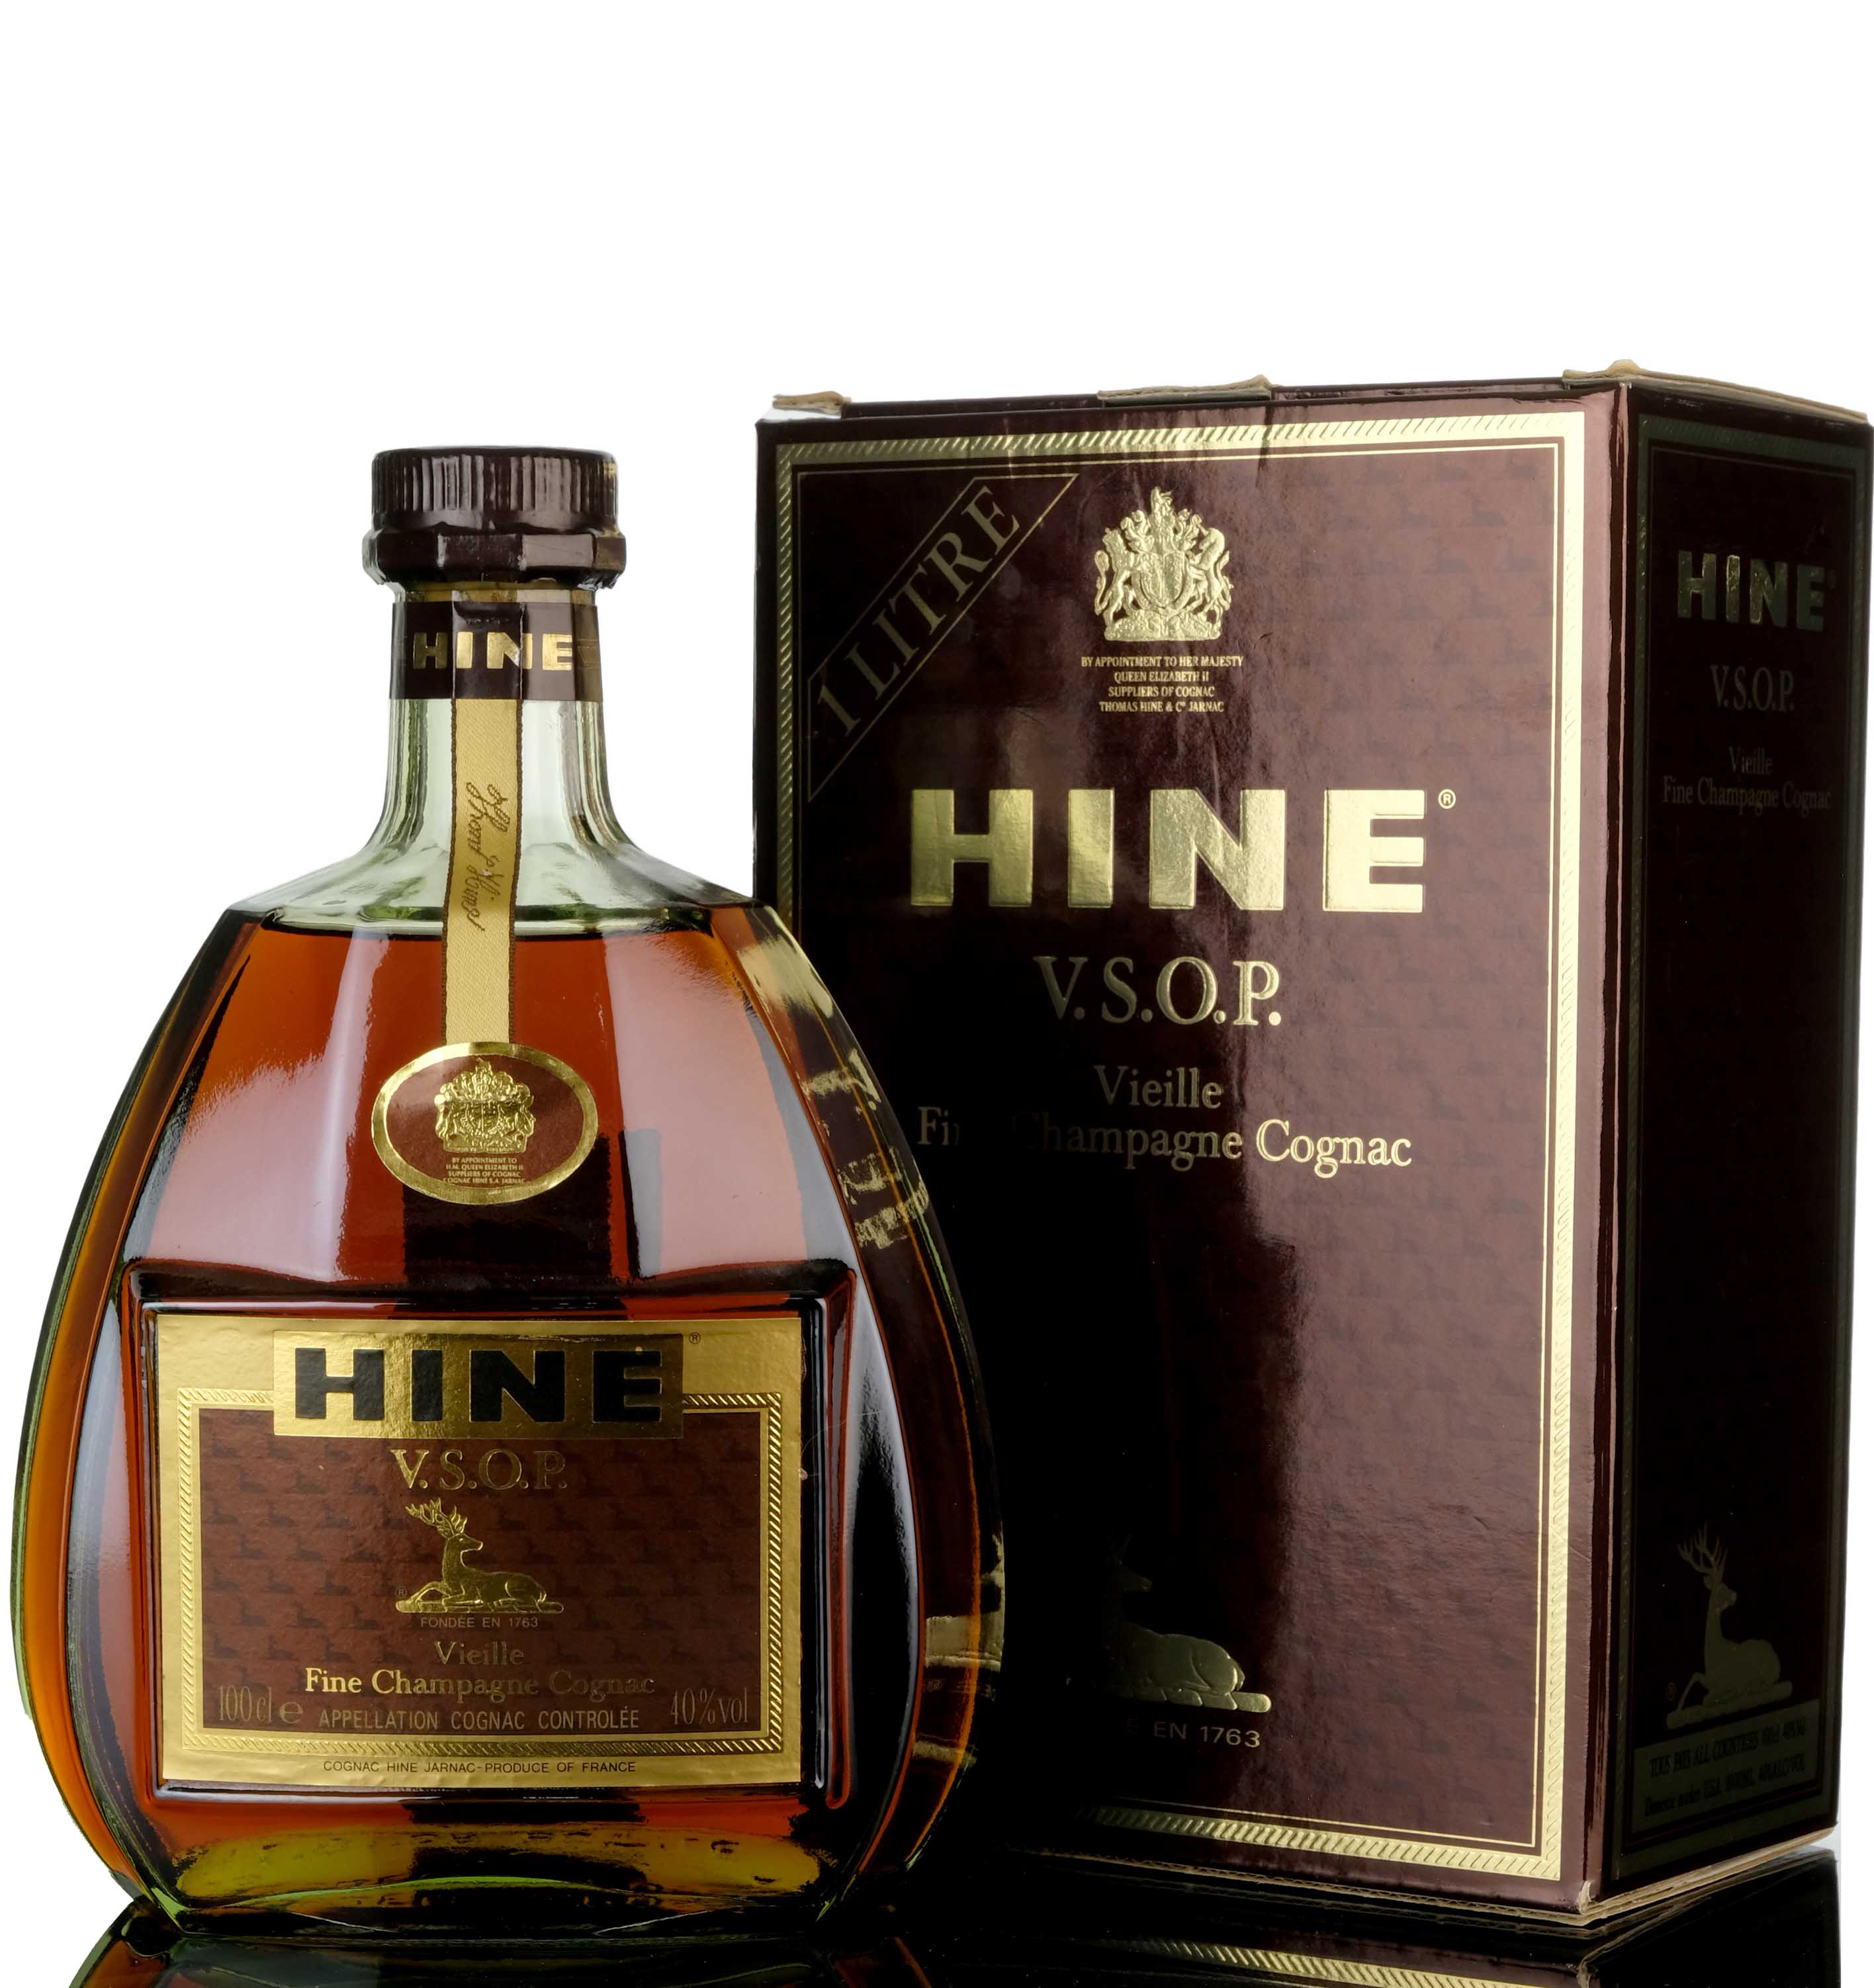 Hine VSOP Vieille Fine Champagne Cognac - 1 Litre